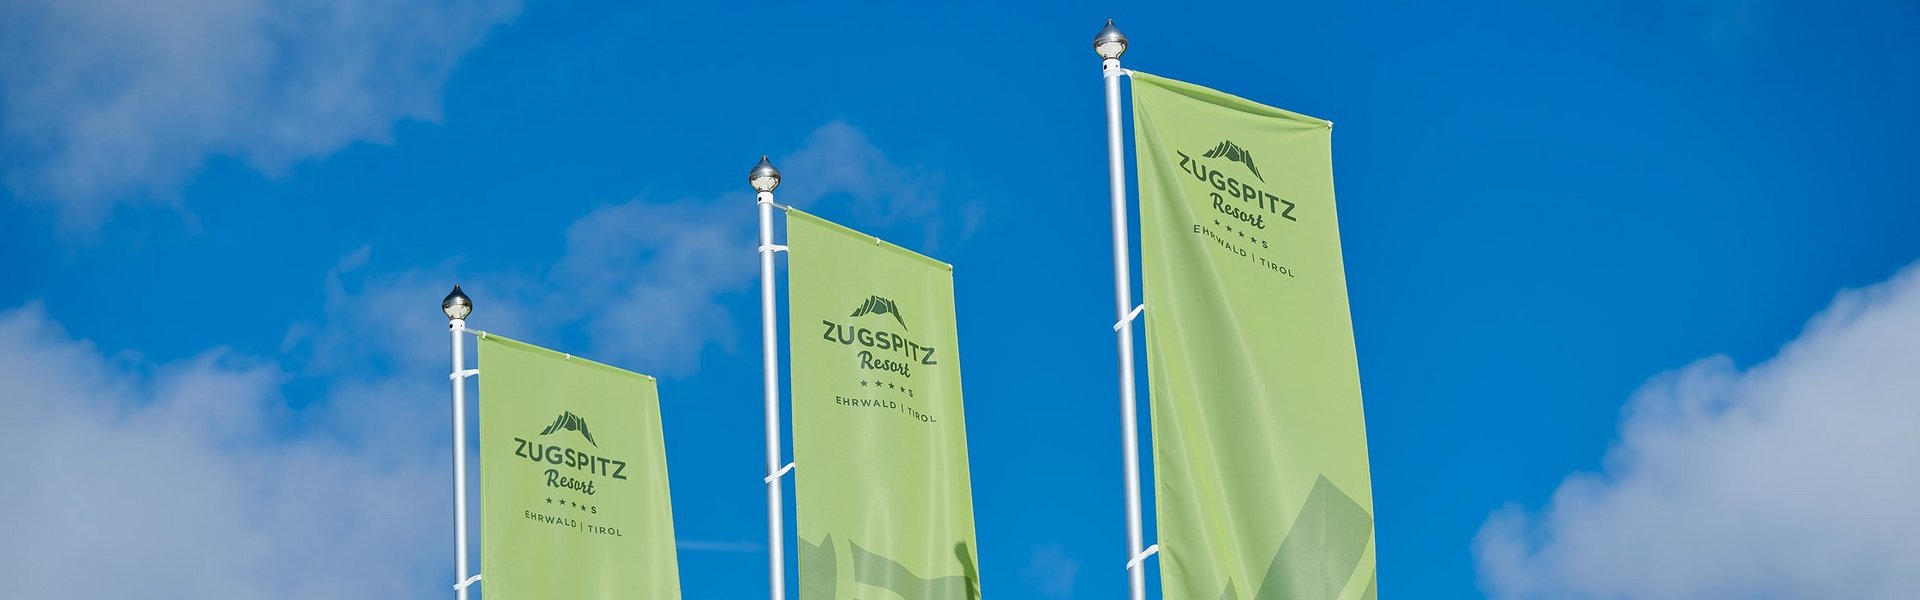 Drei grüne Fahnen vom Zugspitz Resort